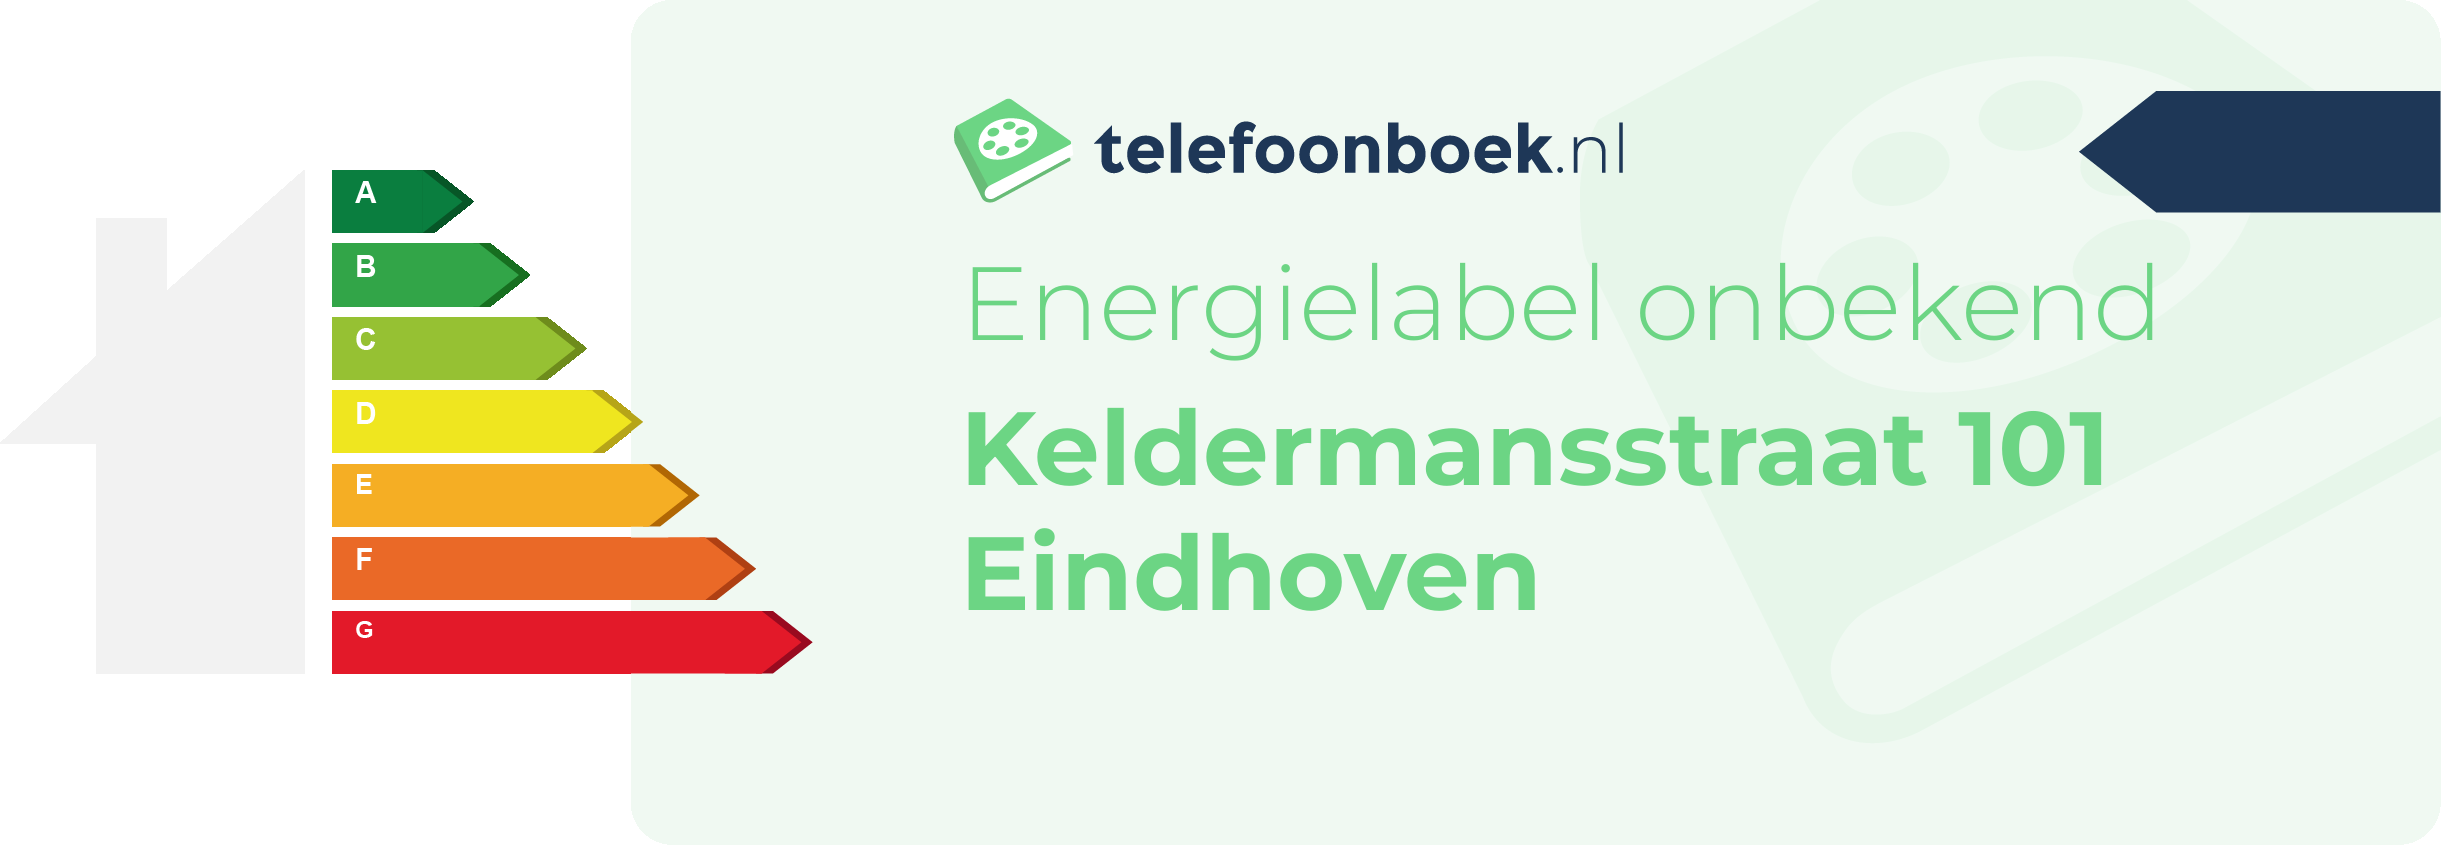 Energielabel Keldermansstraat 101 Eindhoven